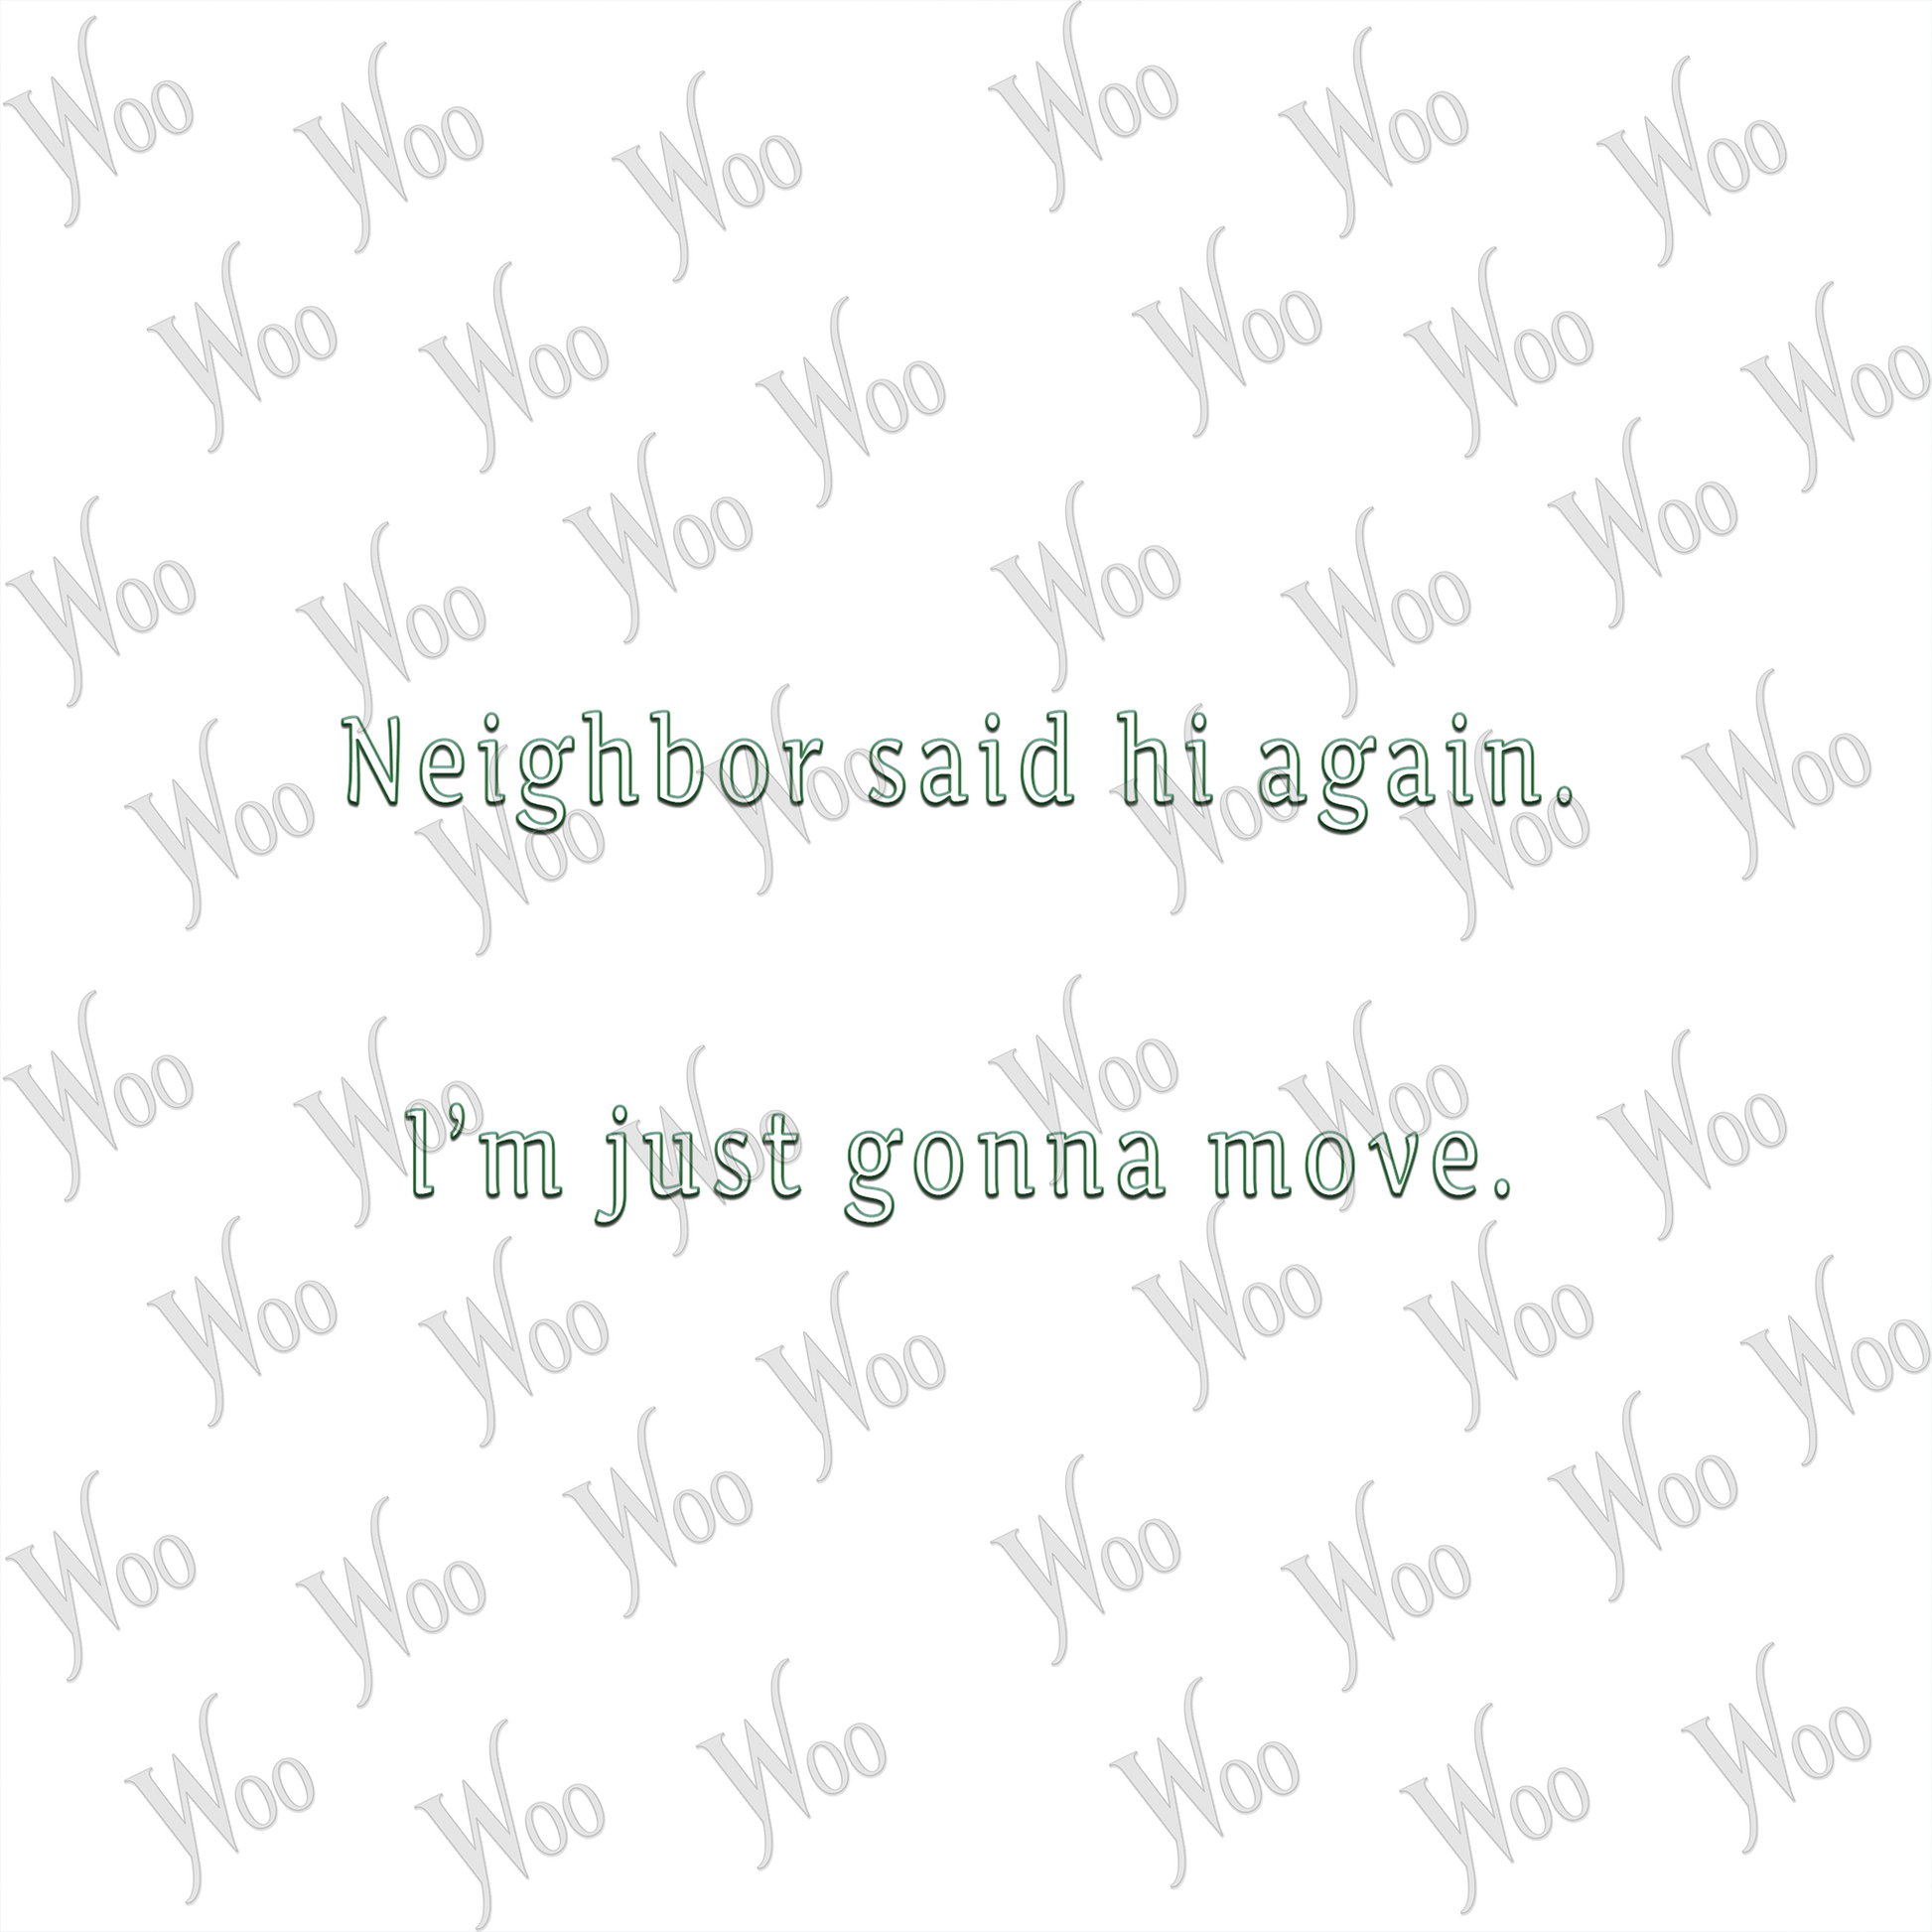 Neighbor said hi again. I'm just gonna move.